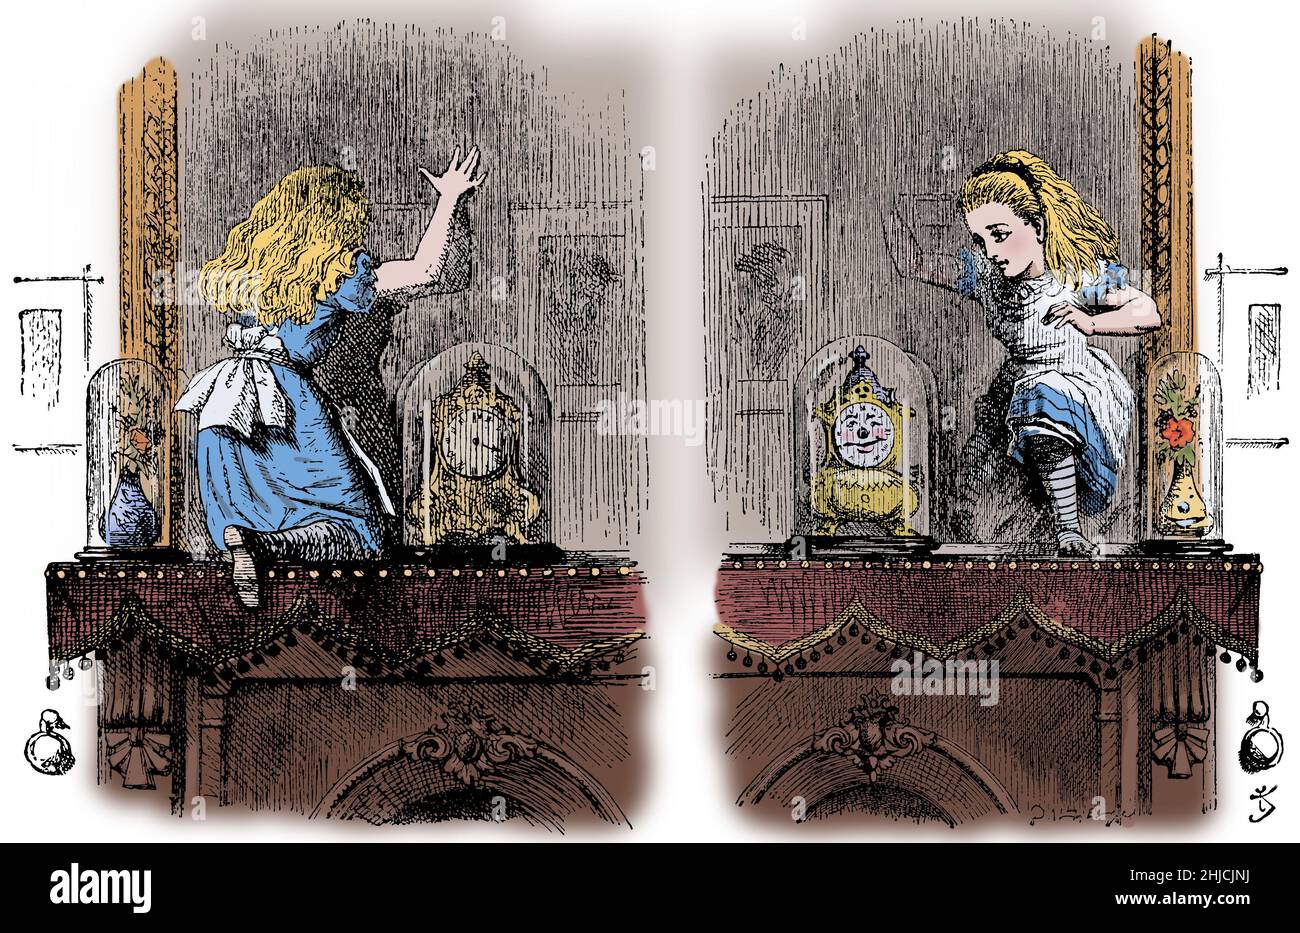 A través del Looking-Glass, y lo que Alice encontró allí (1871) es una novela de Lewis Carroll. Subiendo al manto de la chimenea, ella se apola en el espejo colgado de la pared detrás de la chimenea y descubre, para su sorpresa, que es capaz de pasar a través de ella a un mundo alternativo. John Tenniel (28 de febrero de 1820 - 25 de febrero de 1914) fue un ilustrador, humorista gráfico y dibujante político inglés. Foto de stock